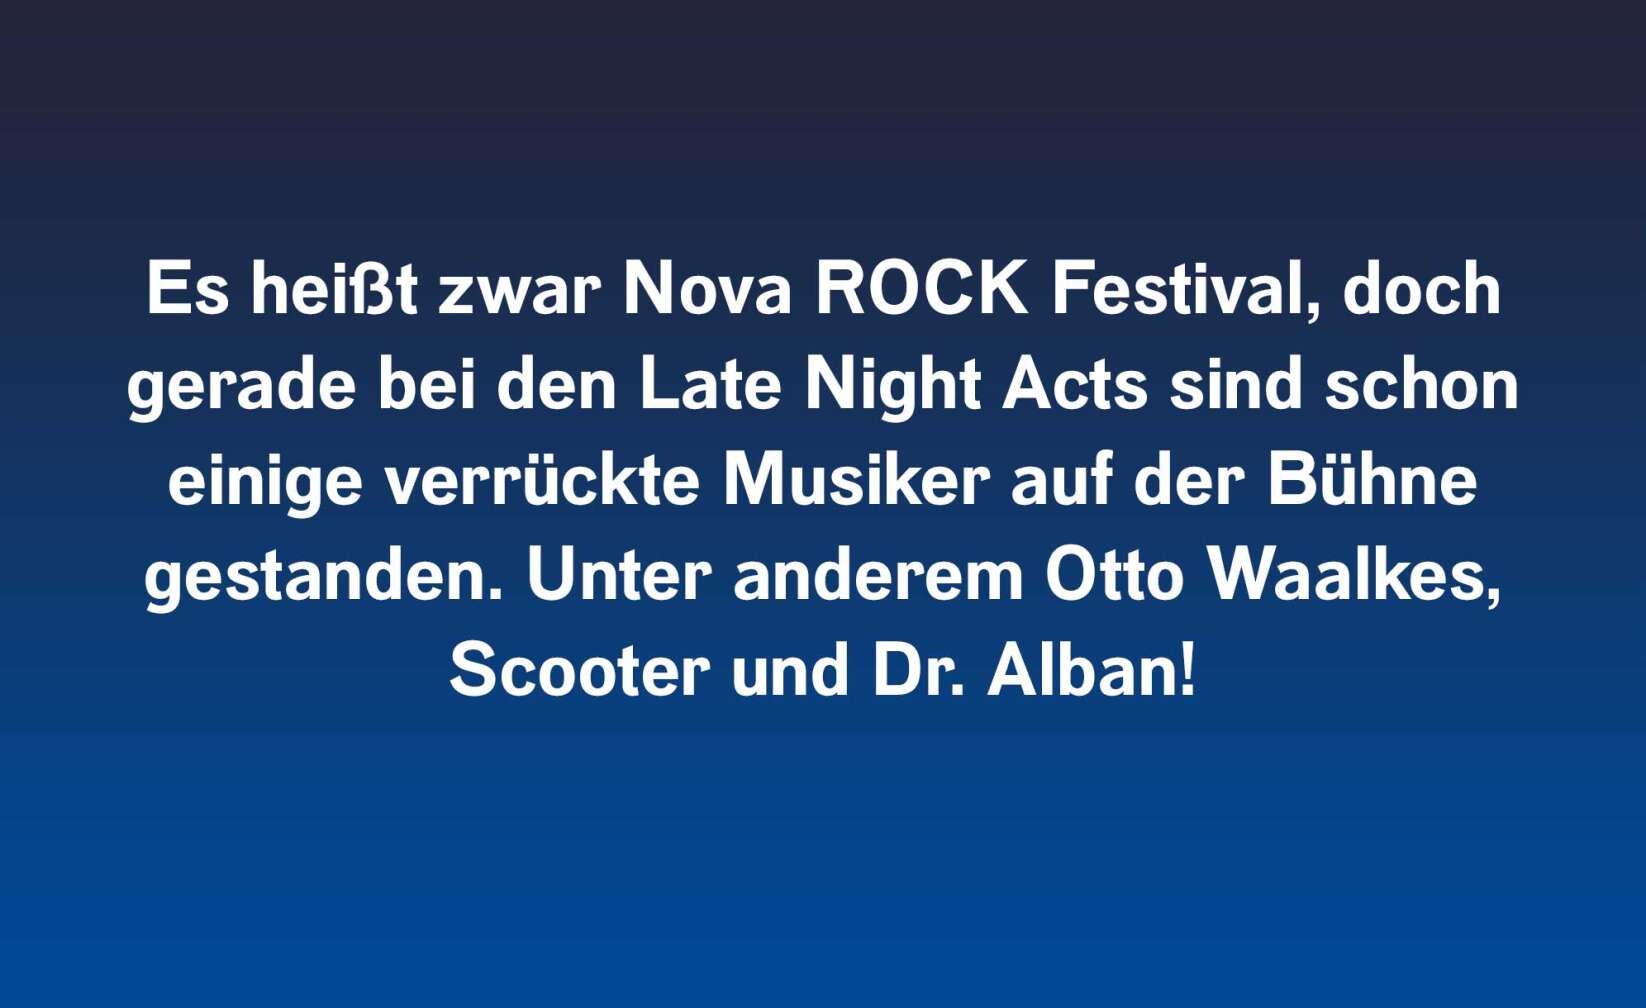 Es heißt zwar Nova ROCK Festival, doch gerade bei den Late Night Acts sind schon einige verrückte Musiker auf der Bühne gestanden. Unter anderem Otto Waalkes, Scooter und Dr. Alban!